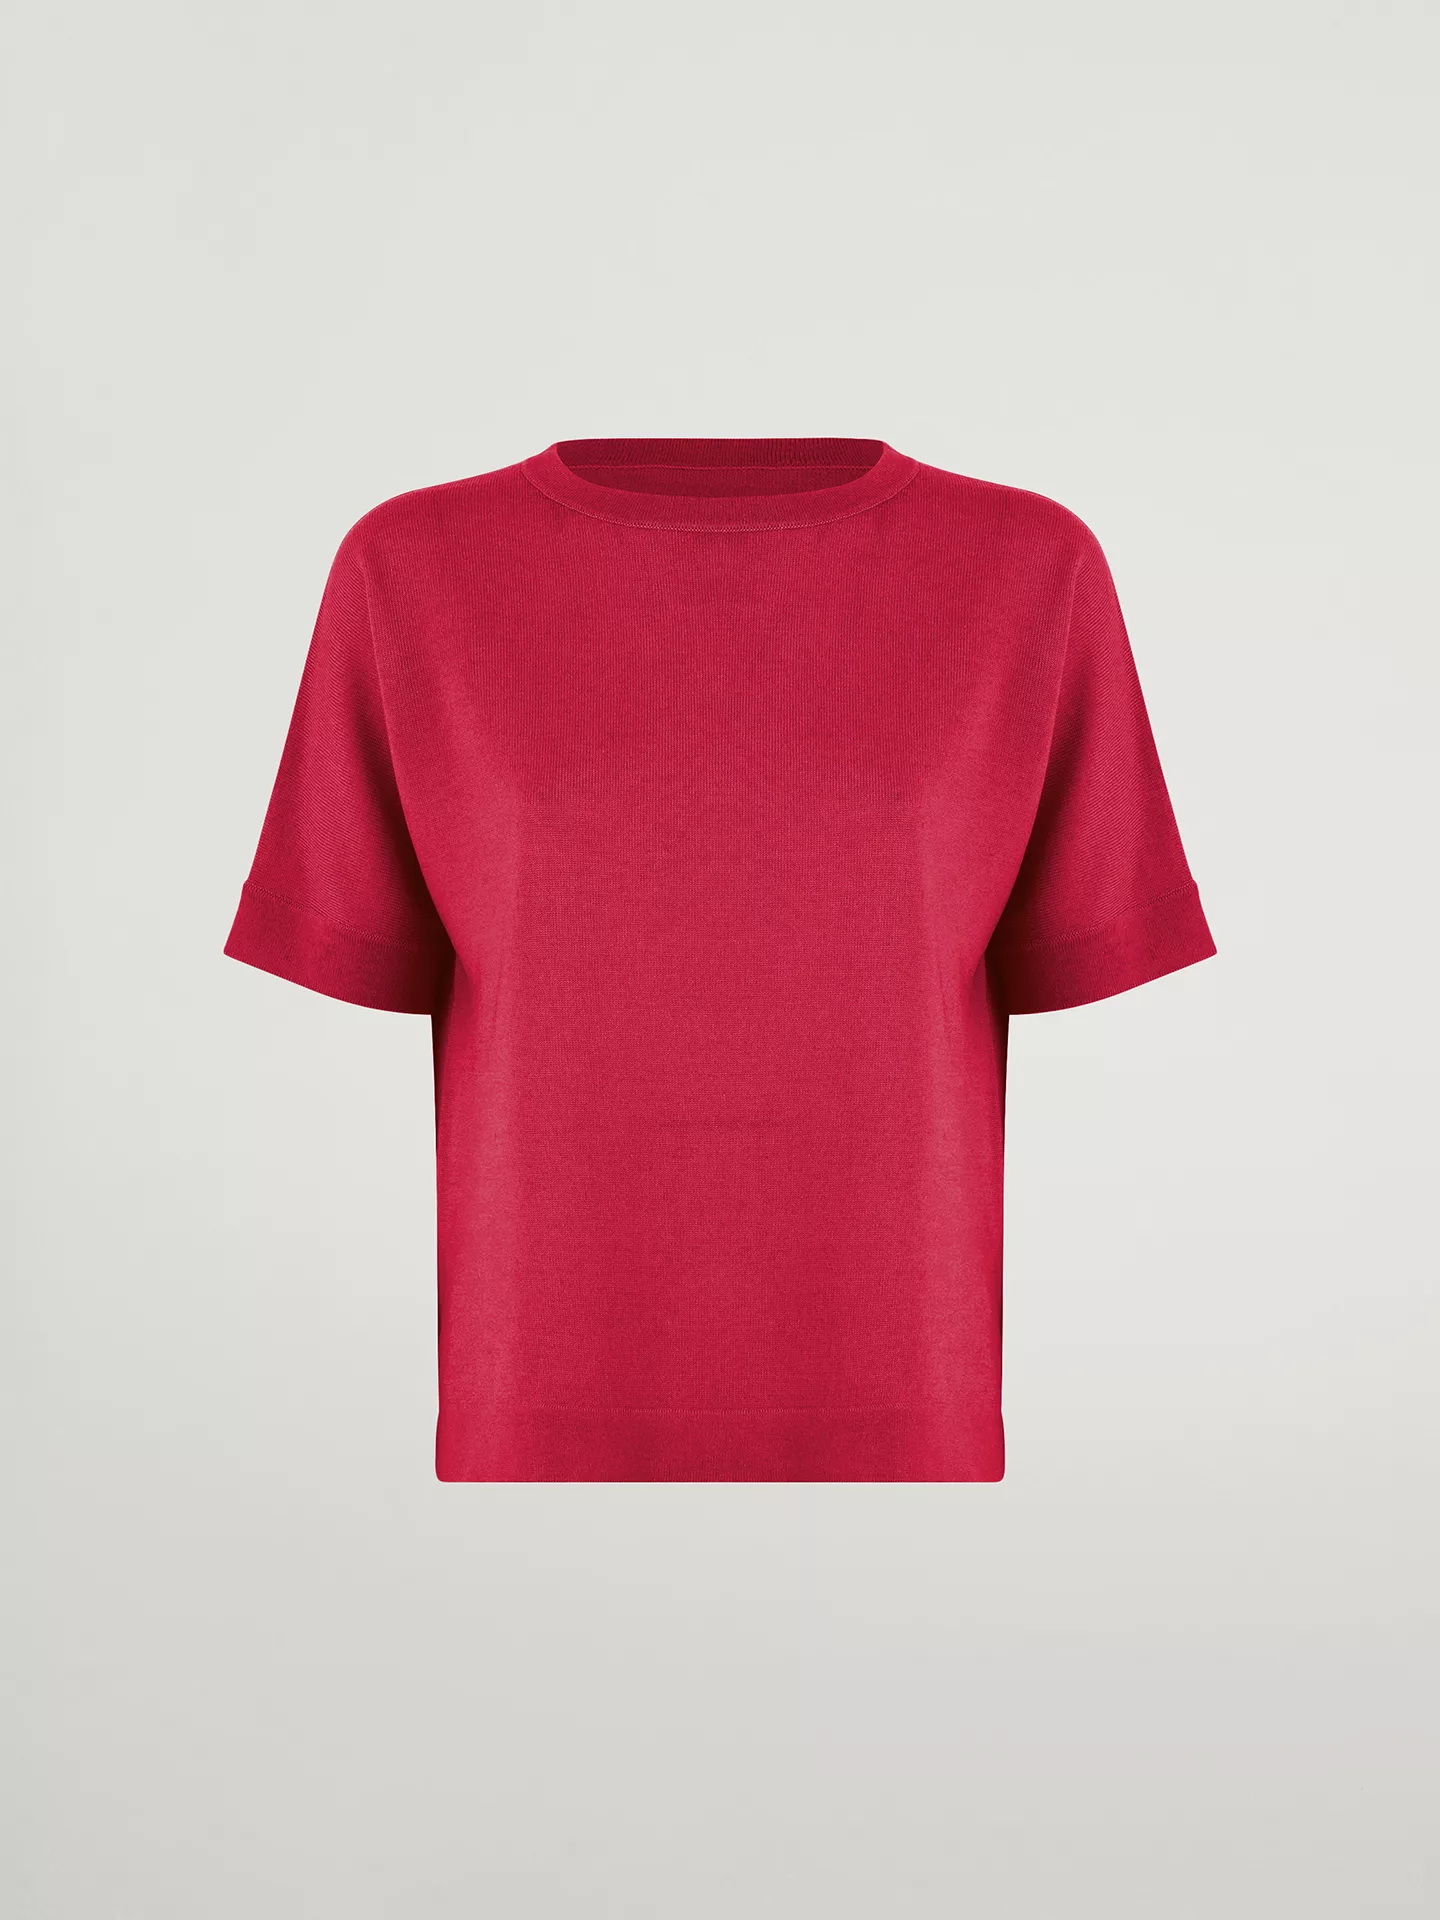 Wolford - Merino Blend Top Short Sleeves, Frau, lipstick red, Größe: L günstig online kaufen